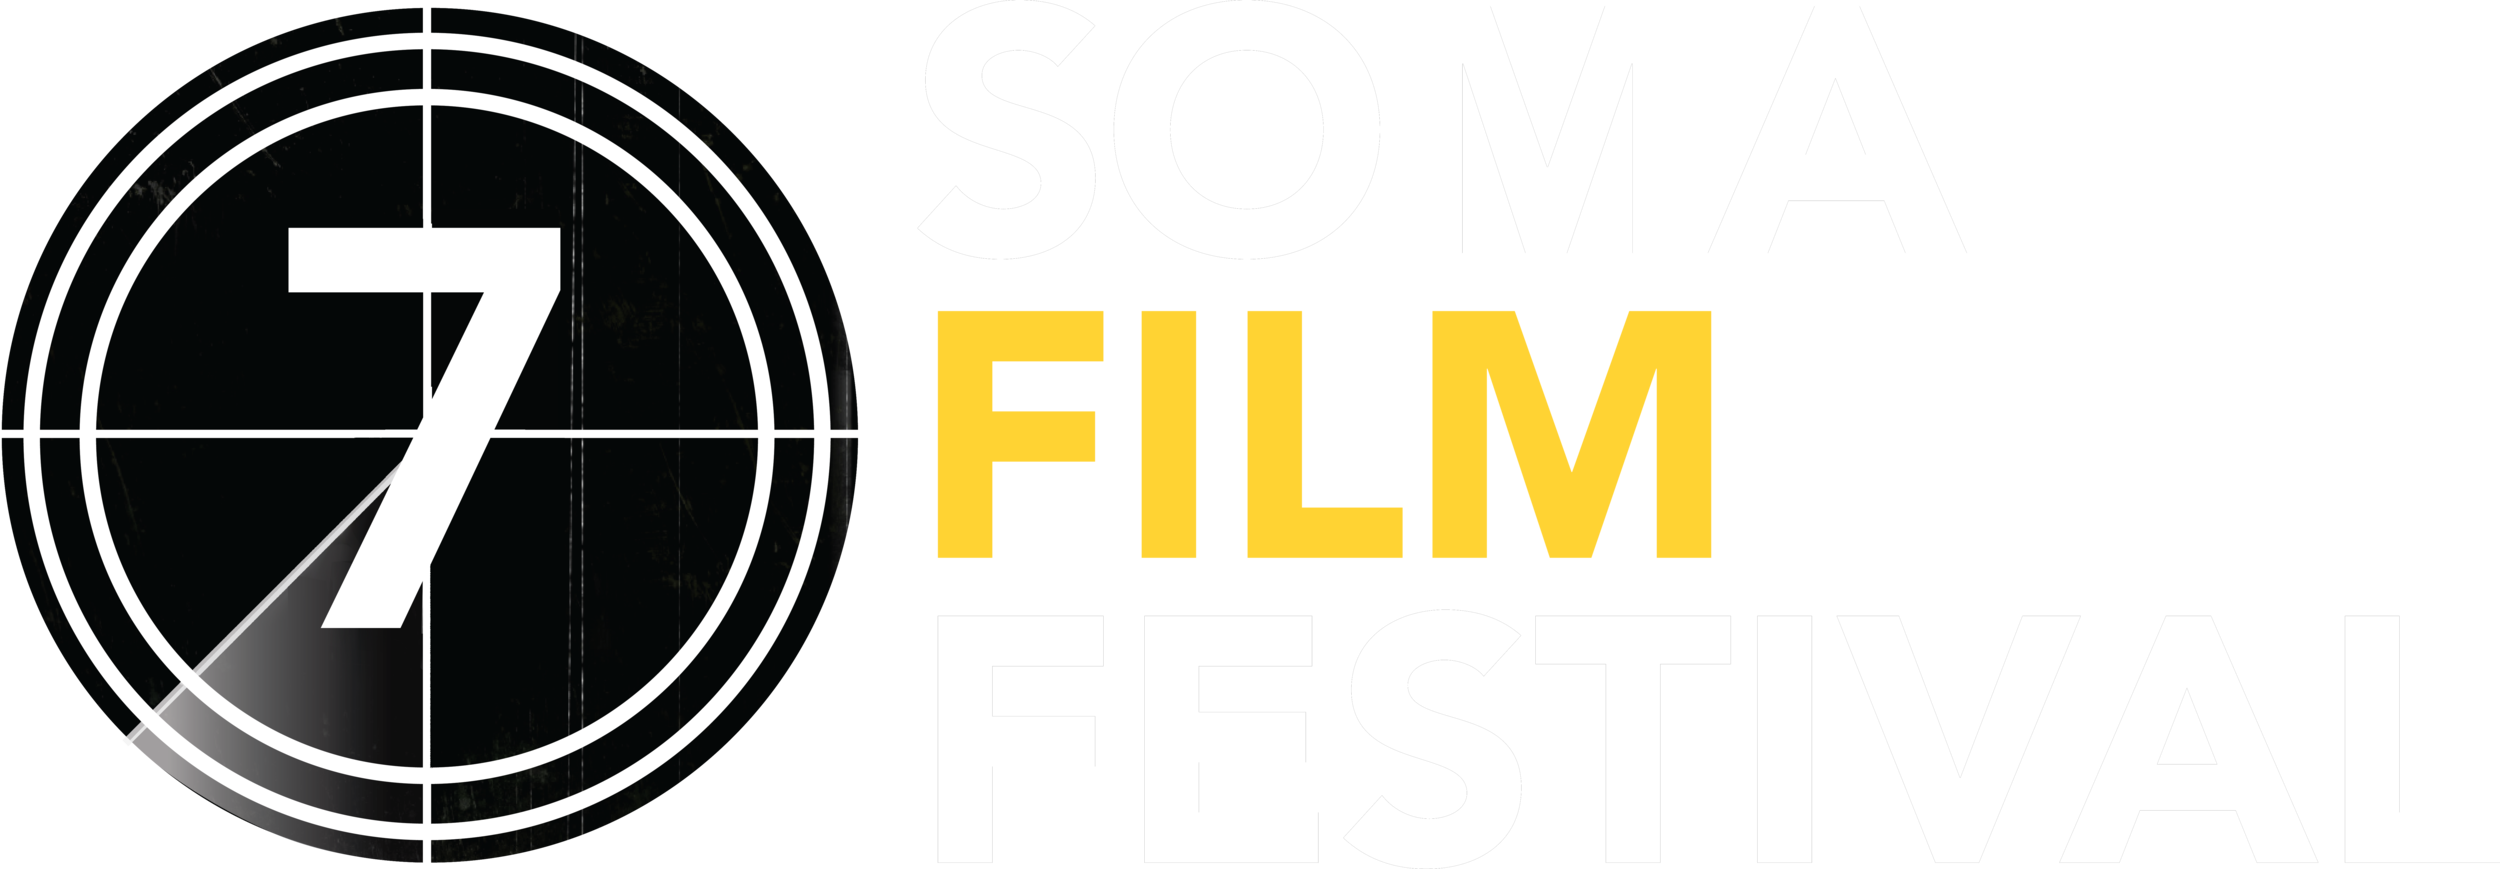 SOMA Film Festival